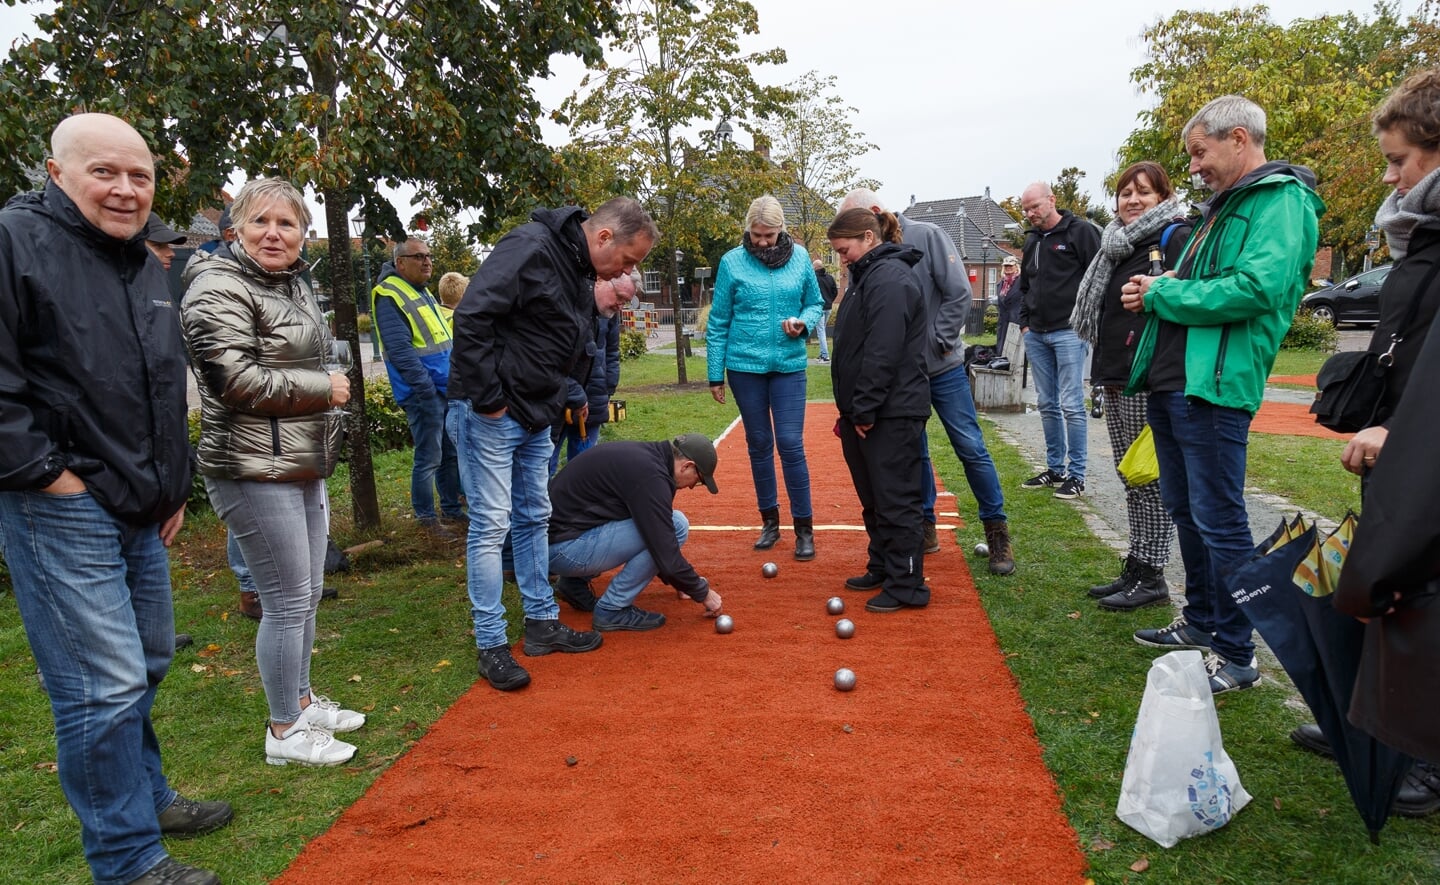 Vorig jaar werd het jeu-de-boulestoernooi in Liempde eind september gehouden in eennatte en koude entourage.